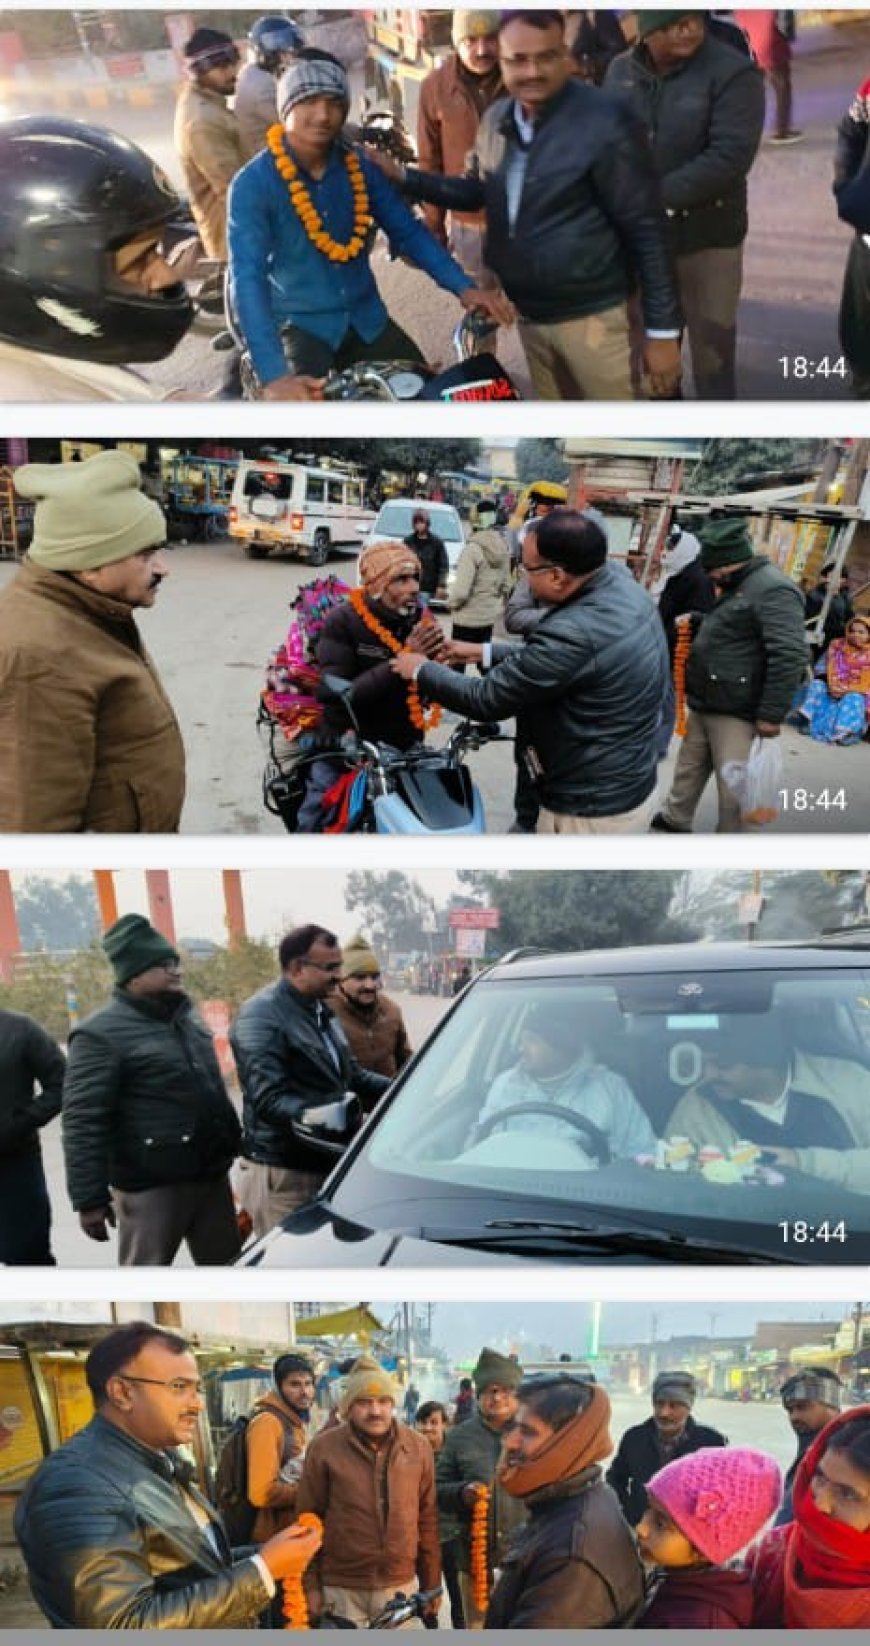 संभागीय परिवहन अधिकारी ने किया जागरूक बिना हेलमेट और शील बेल्ट की गाड़ी ना चलाएं  : राजेश कुमार